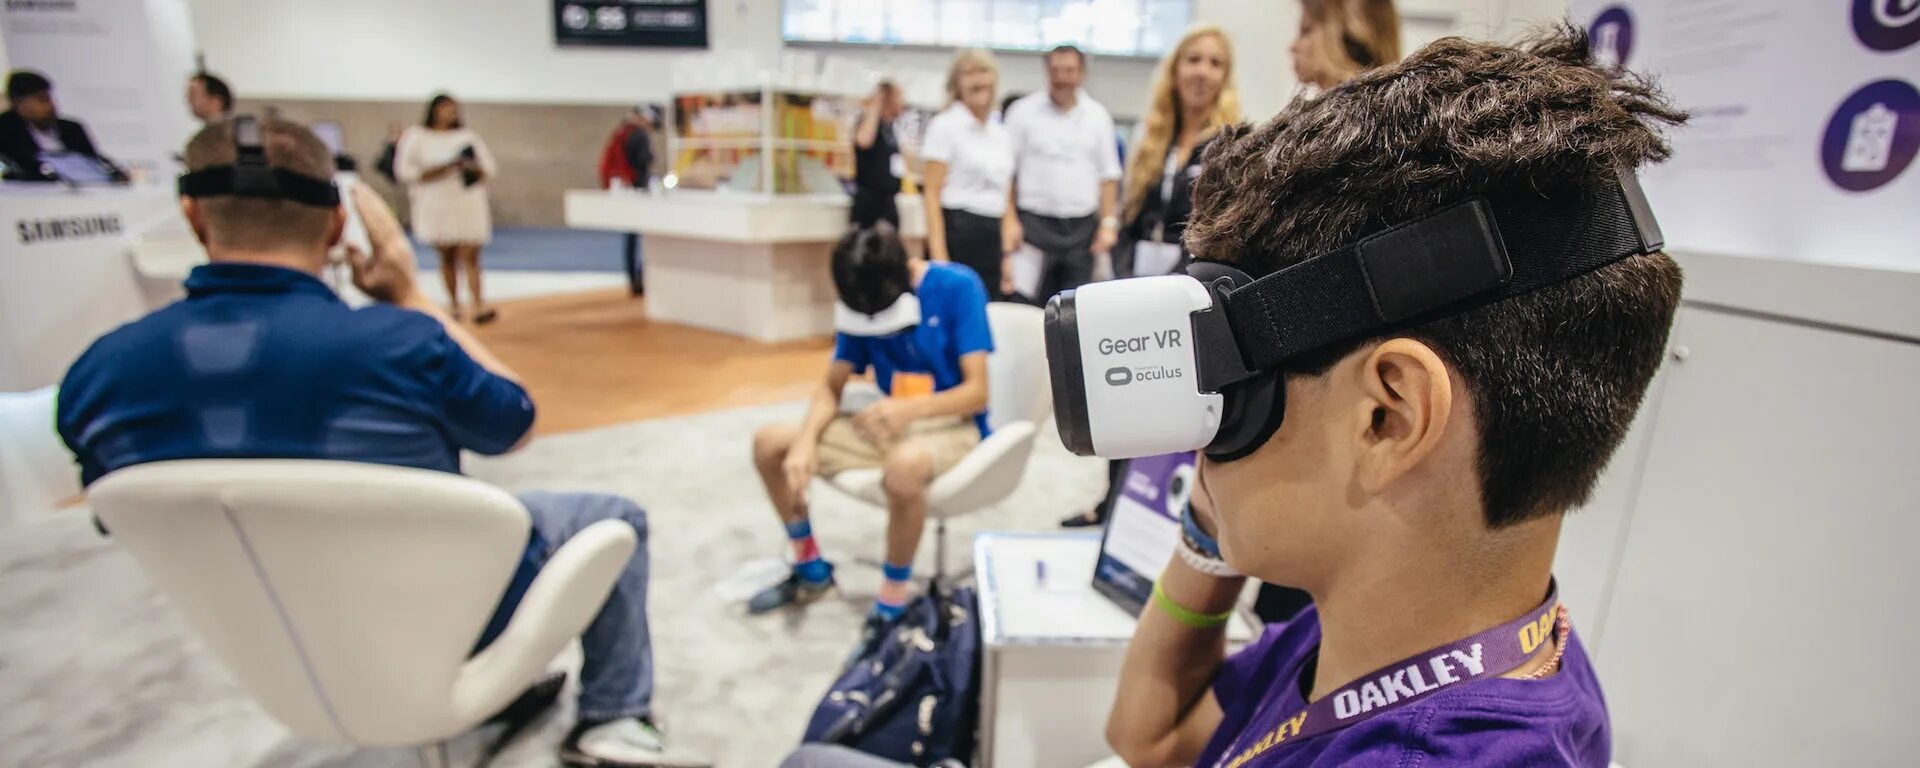 Класс виртуальной реальности. Виртуальная реальность в школе. VR В образовании. Виртуальная реальность в образовании класс.